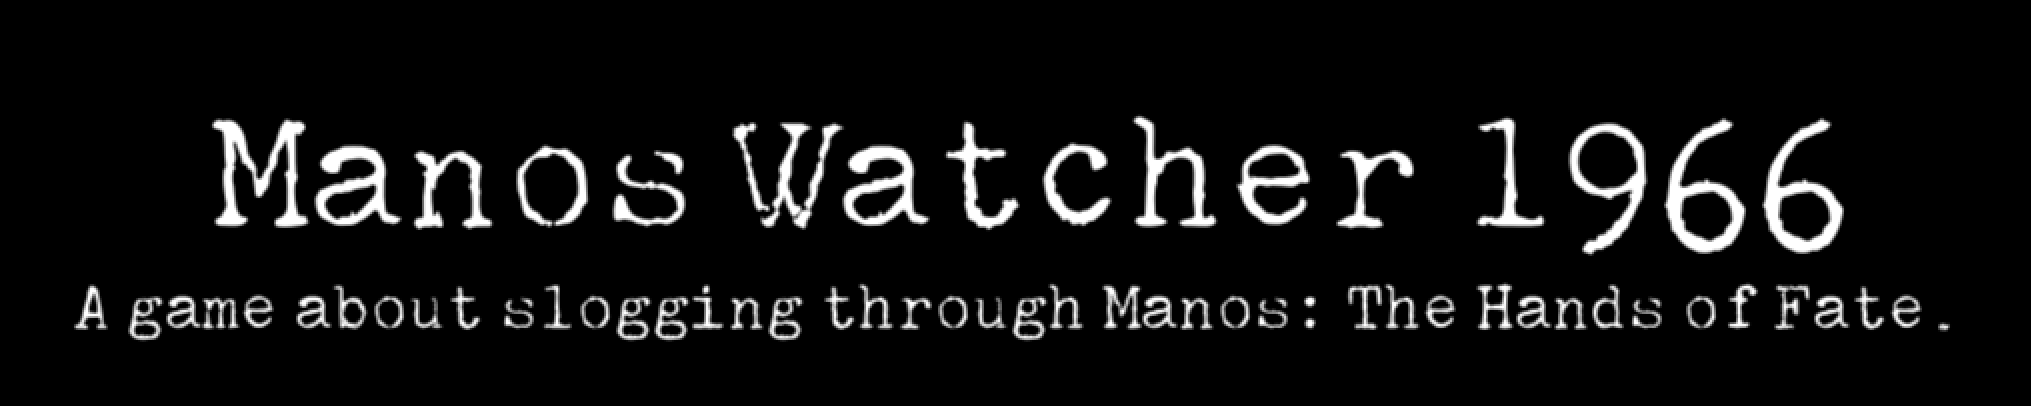 Manos Watcher 1966